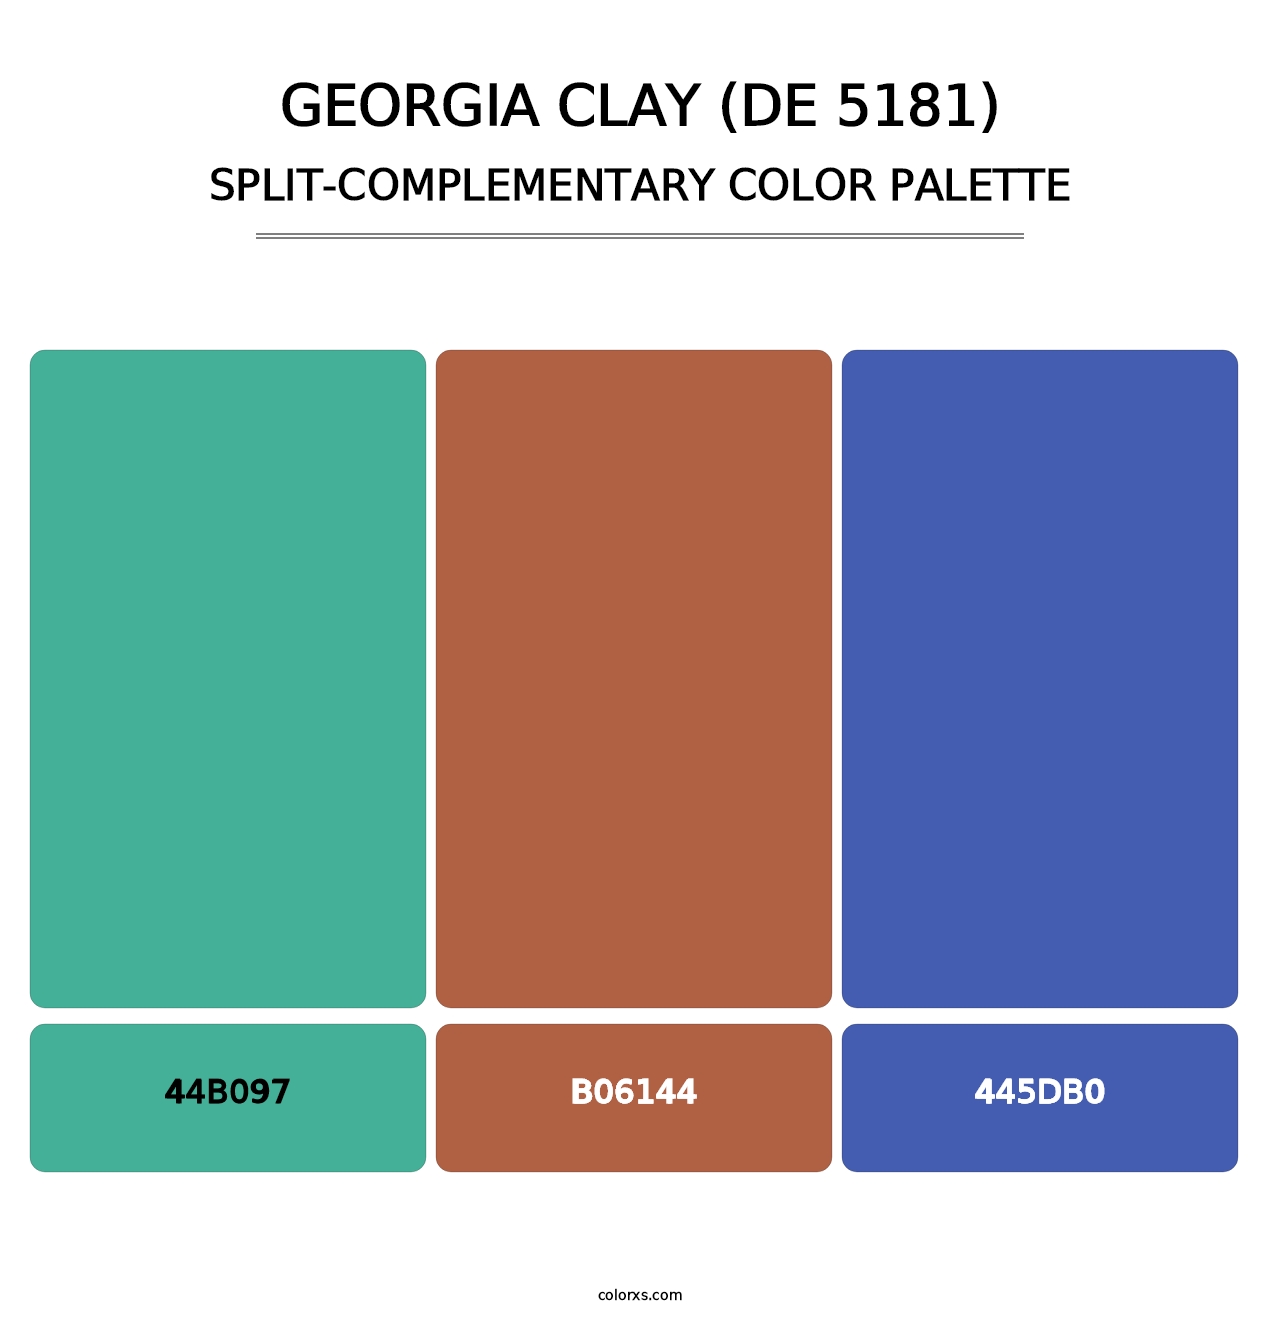 Georgia Clay (DE 5181) - Split-Complementary Color Palette